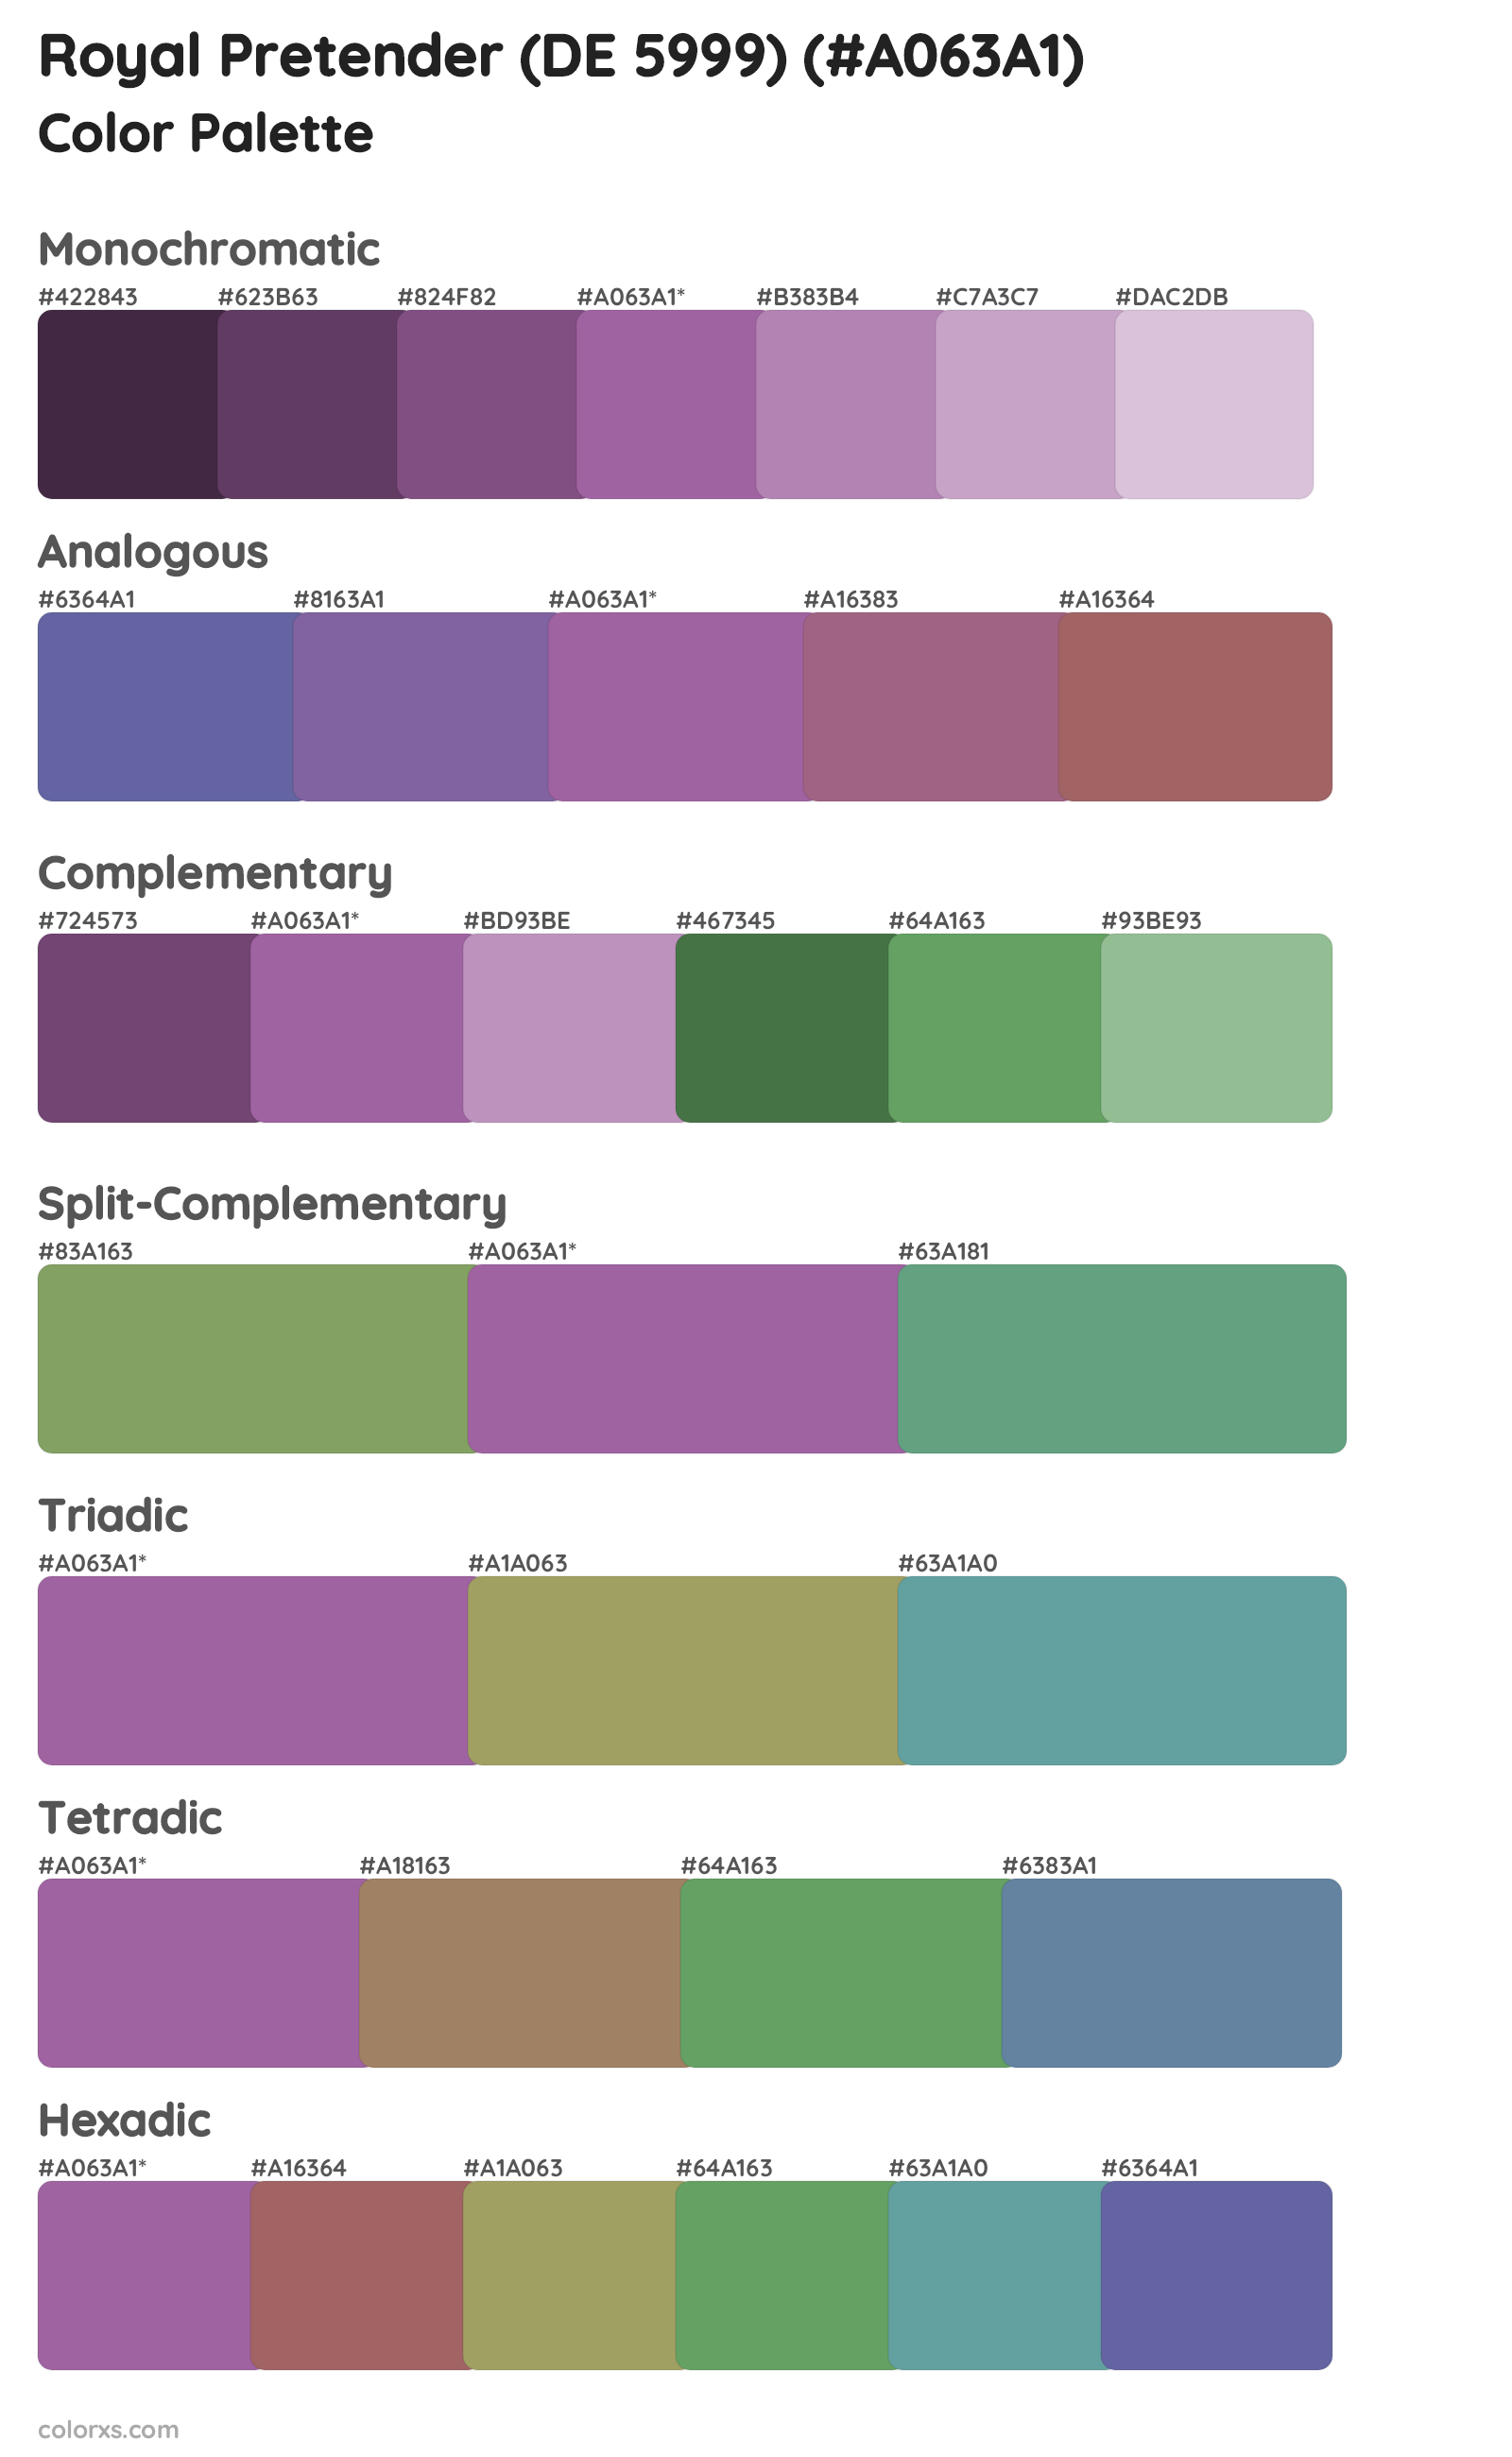 Royal Pretender (DE 5999) Color Scheme Palettes